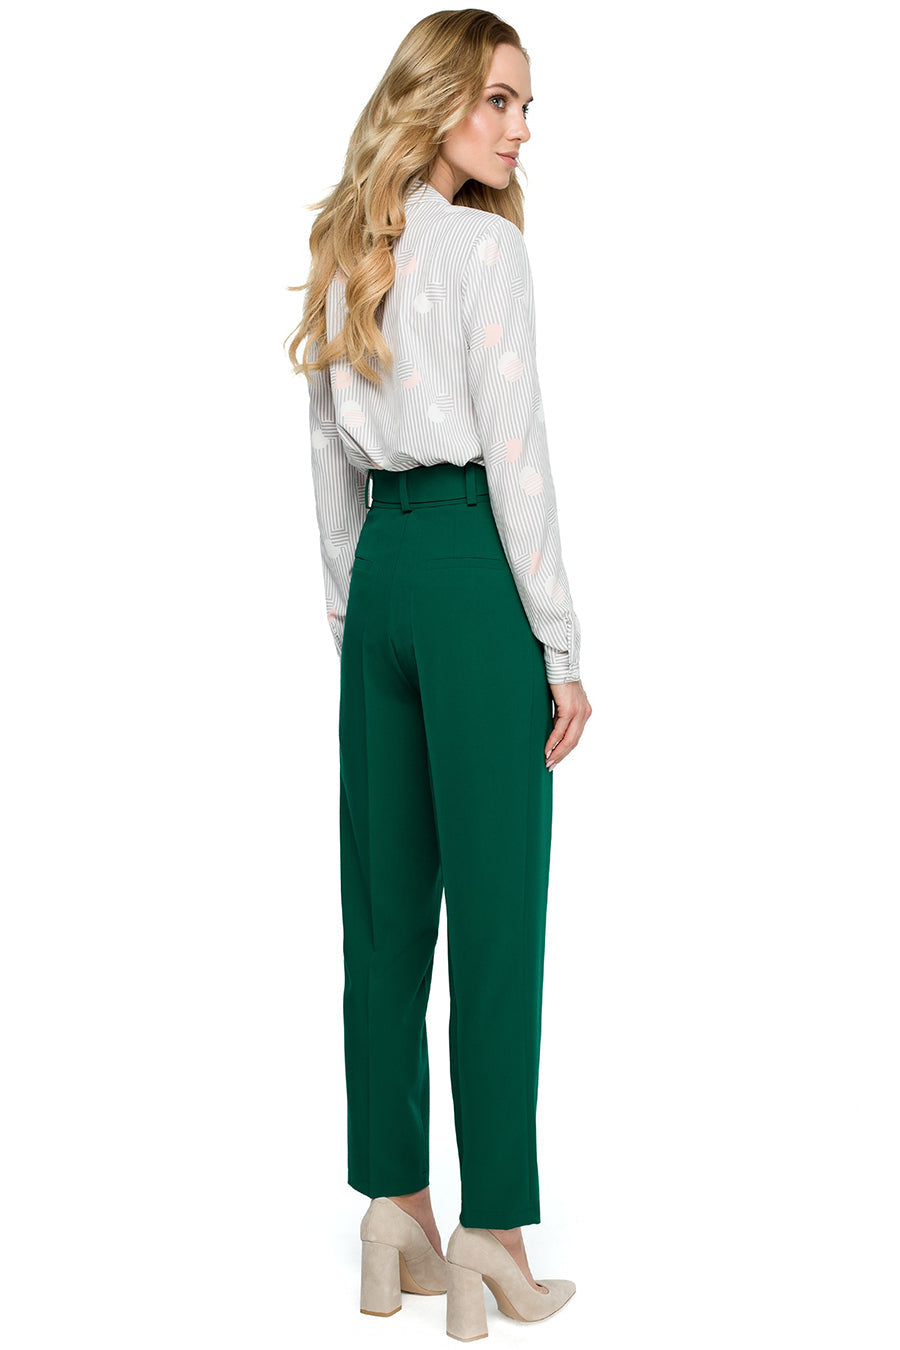 Дамски панталон Ardis, Зелен 2